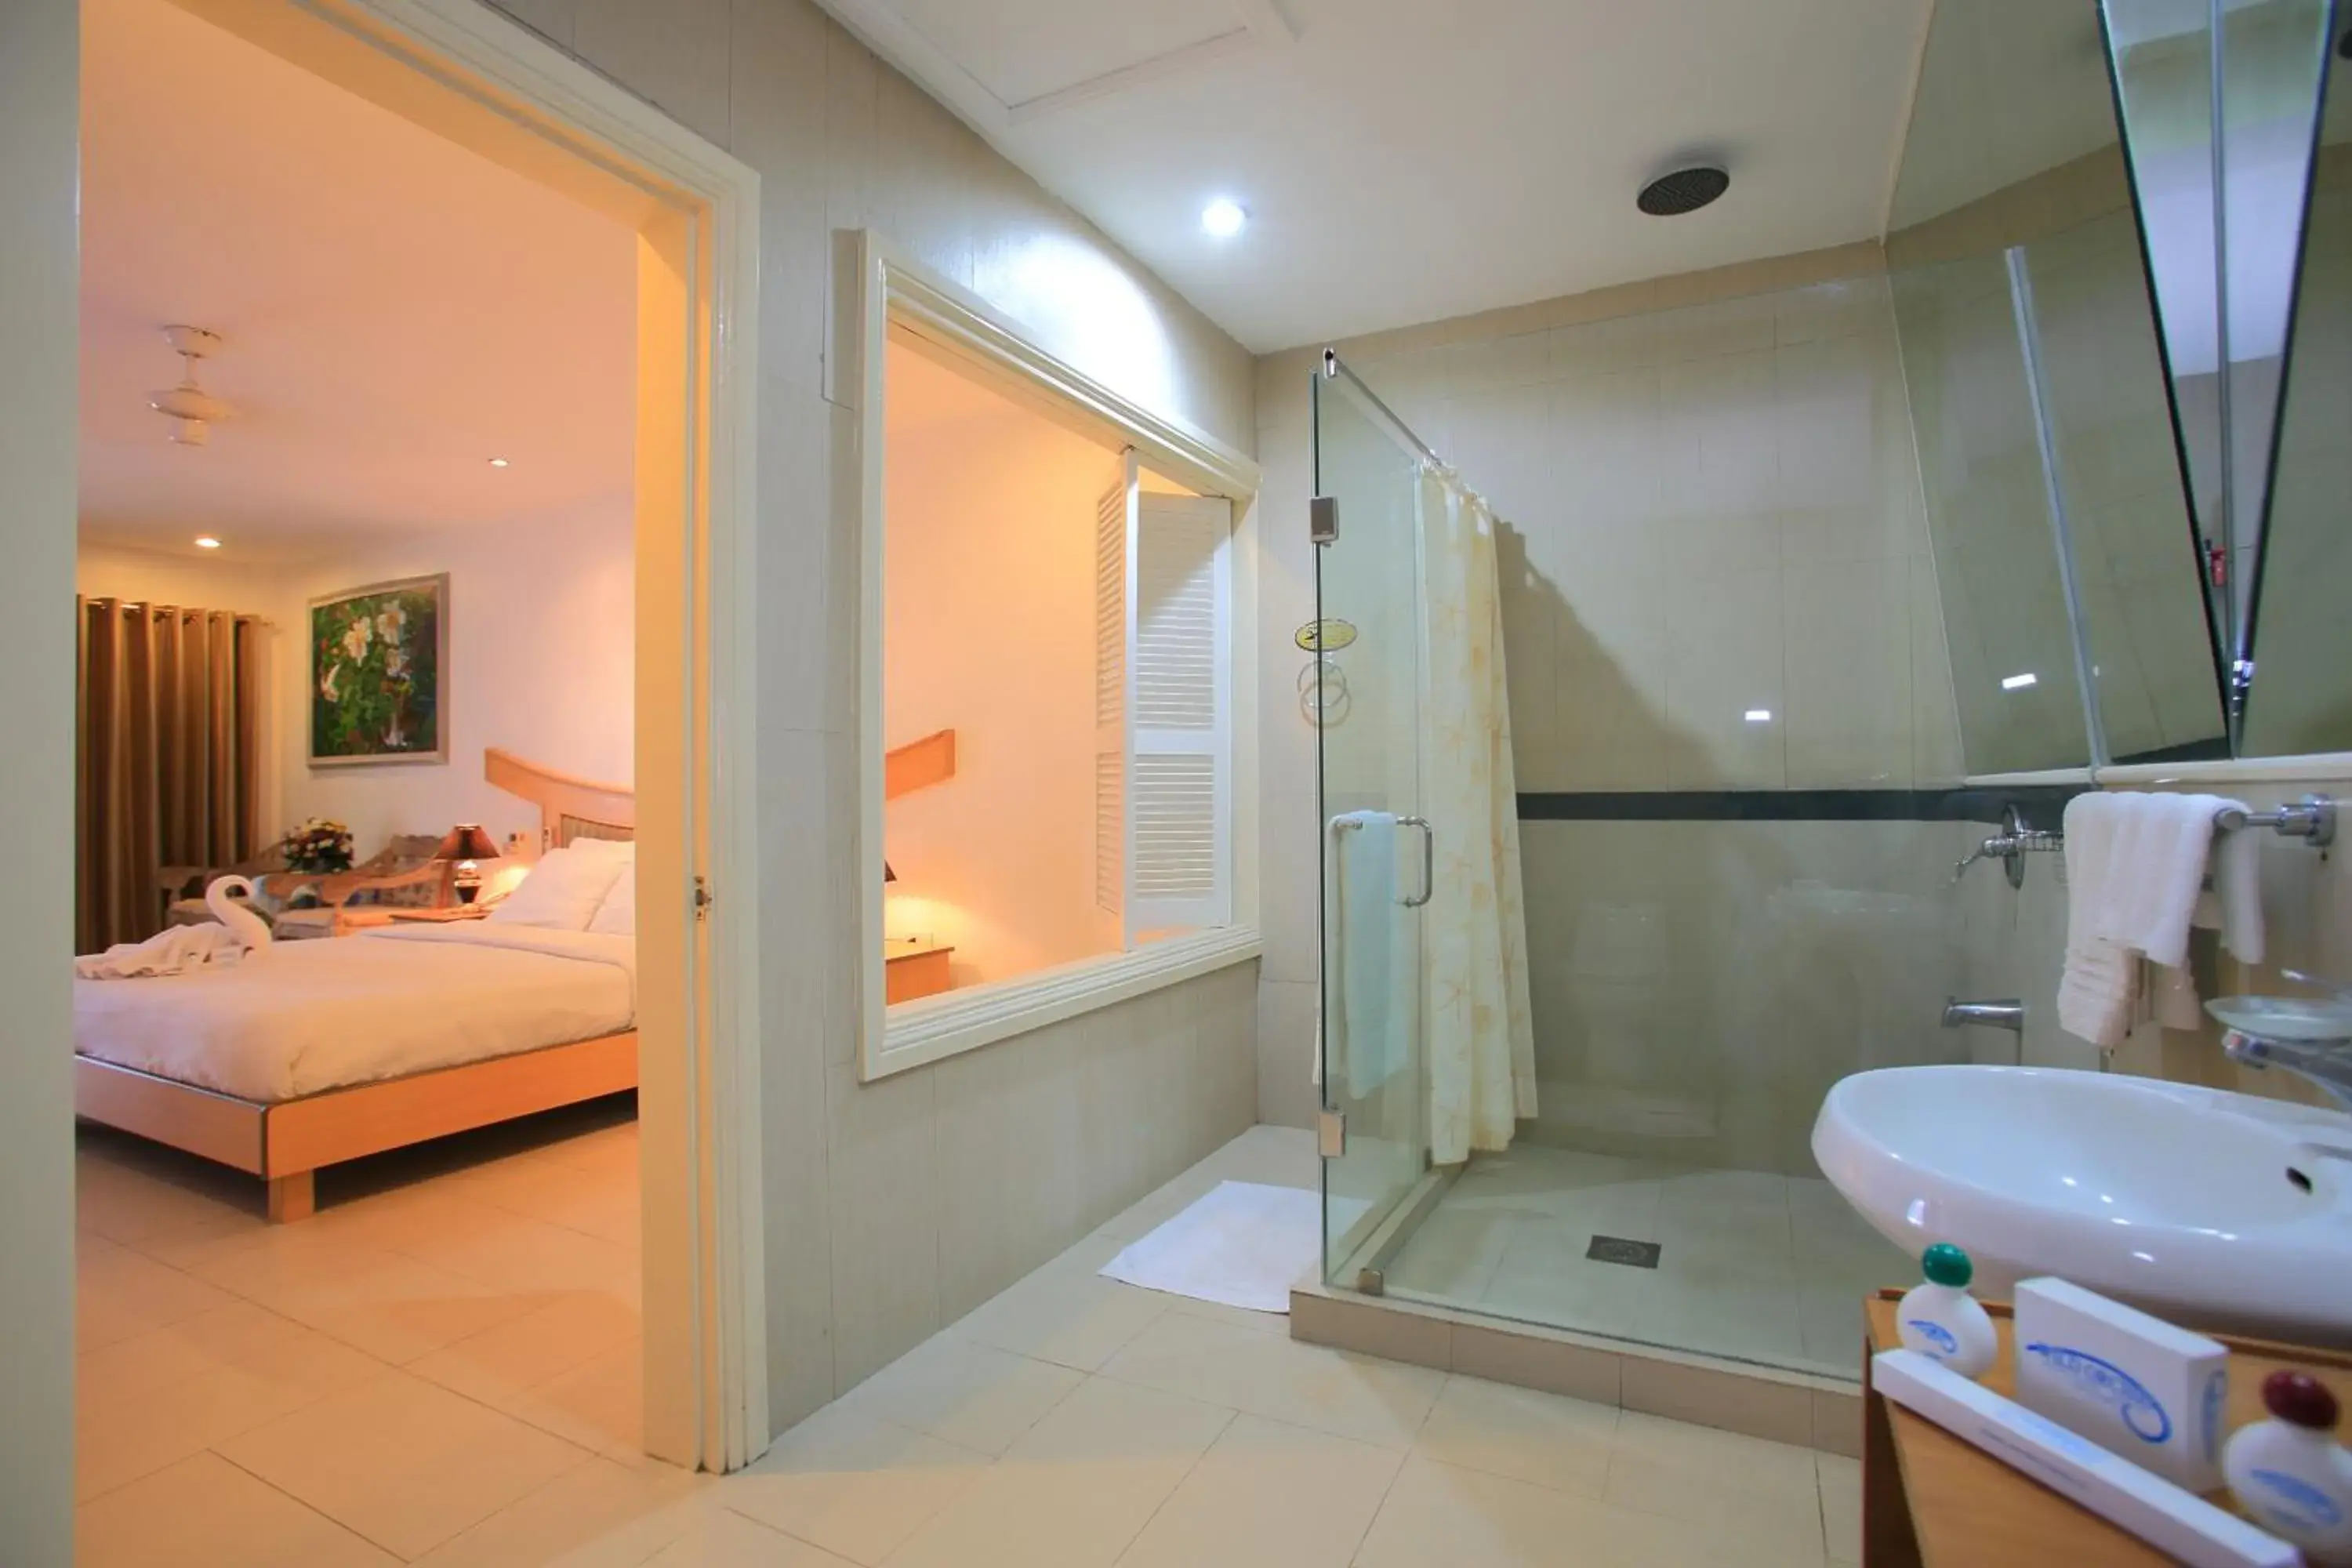 Bedroom, Bathroom in Wild Orchid Beach Resort